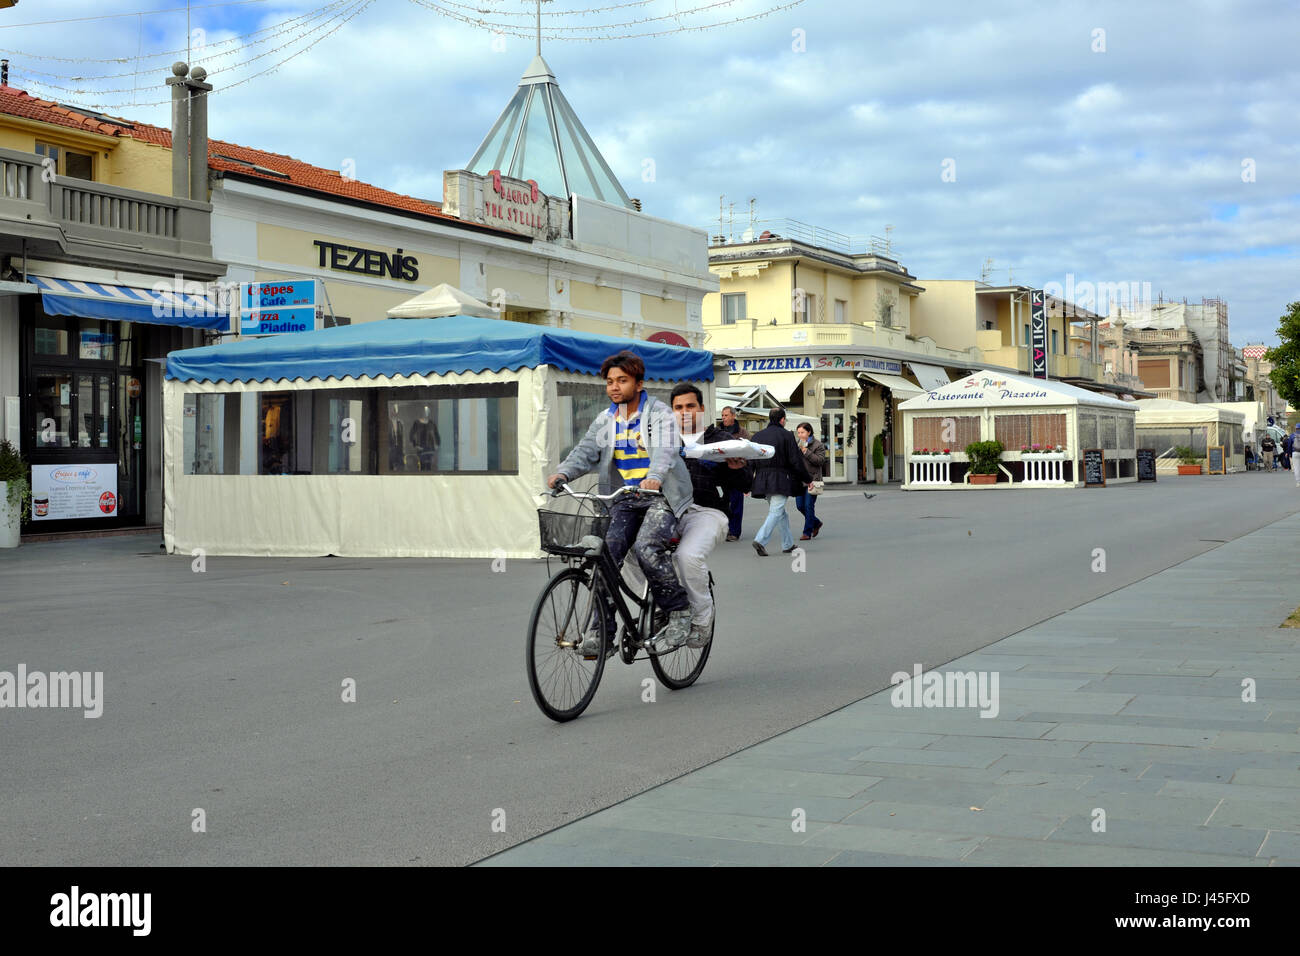 A pranzo il trasporto sostenibile - Due maschi lavoratori asiatici che trasportano il pranzo su una bicicletta - Viareggio promenade, Toscana, Italia, Europa Foto Stock